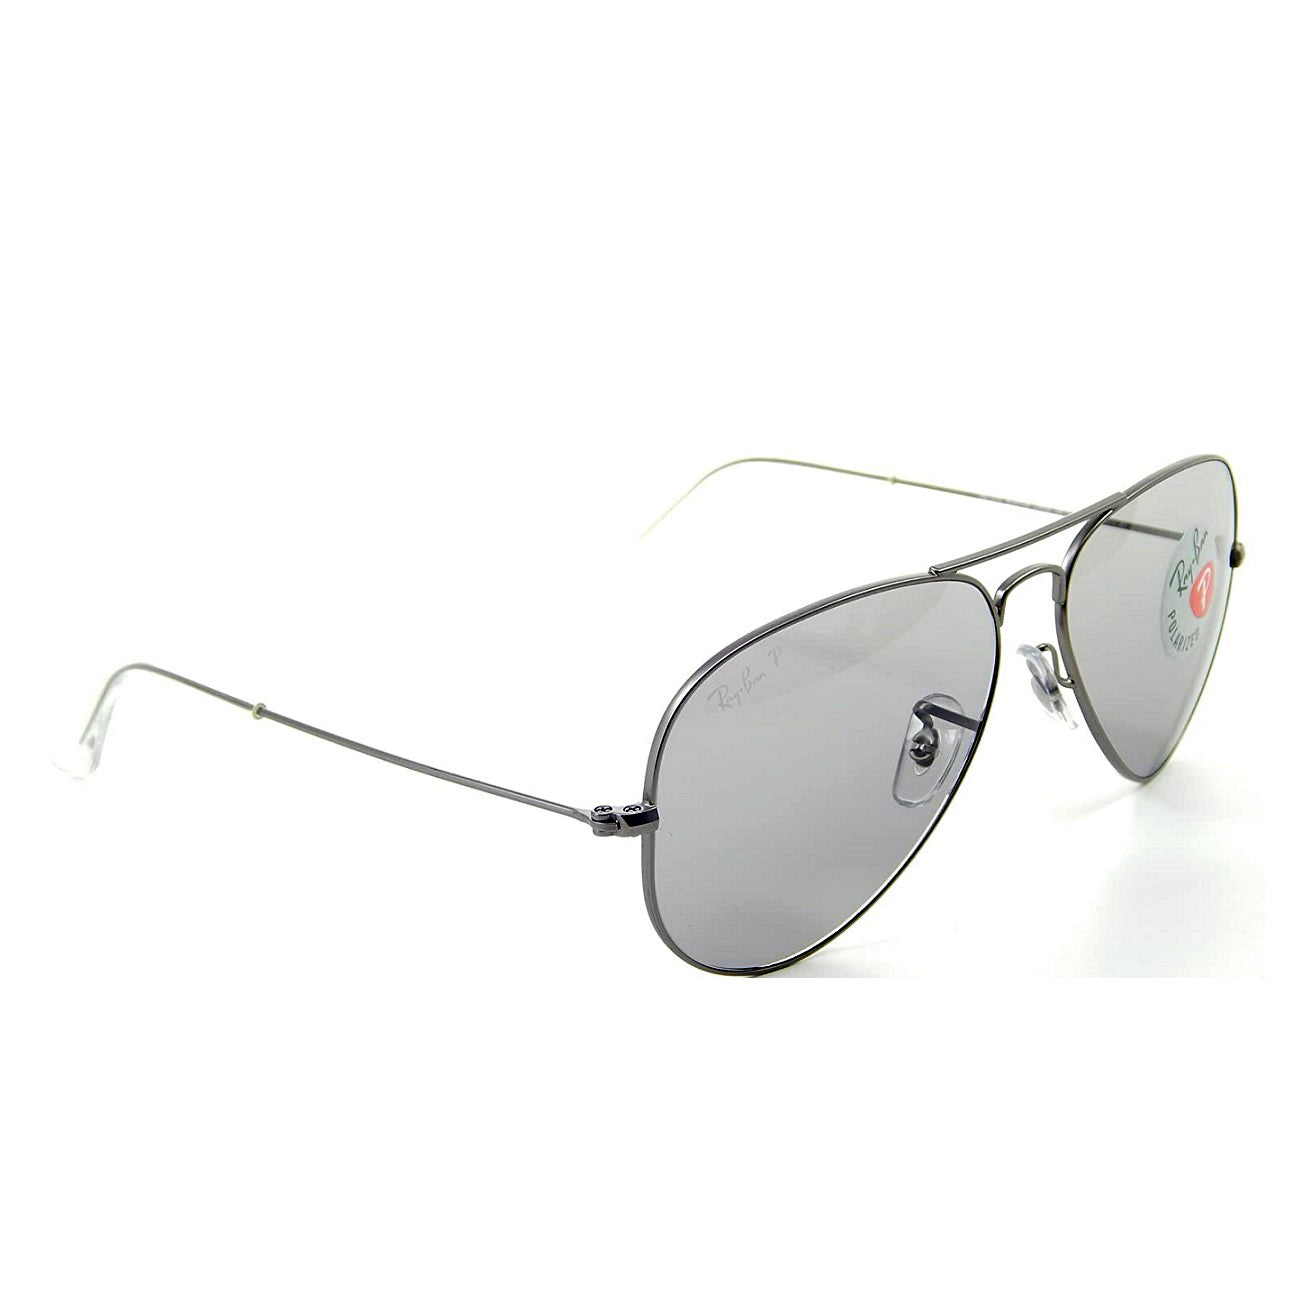 Gafas de sol polarizadas de plástico con clip, estilo aviador pequeño,  2.047-2.126 in de ancho x 2.008 in de alto, lentes grises polarizadas -  Shade